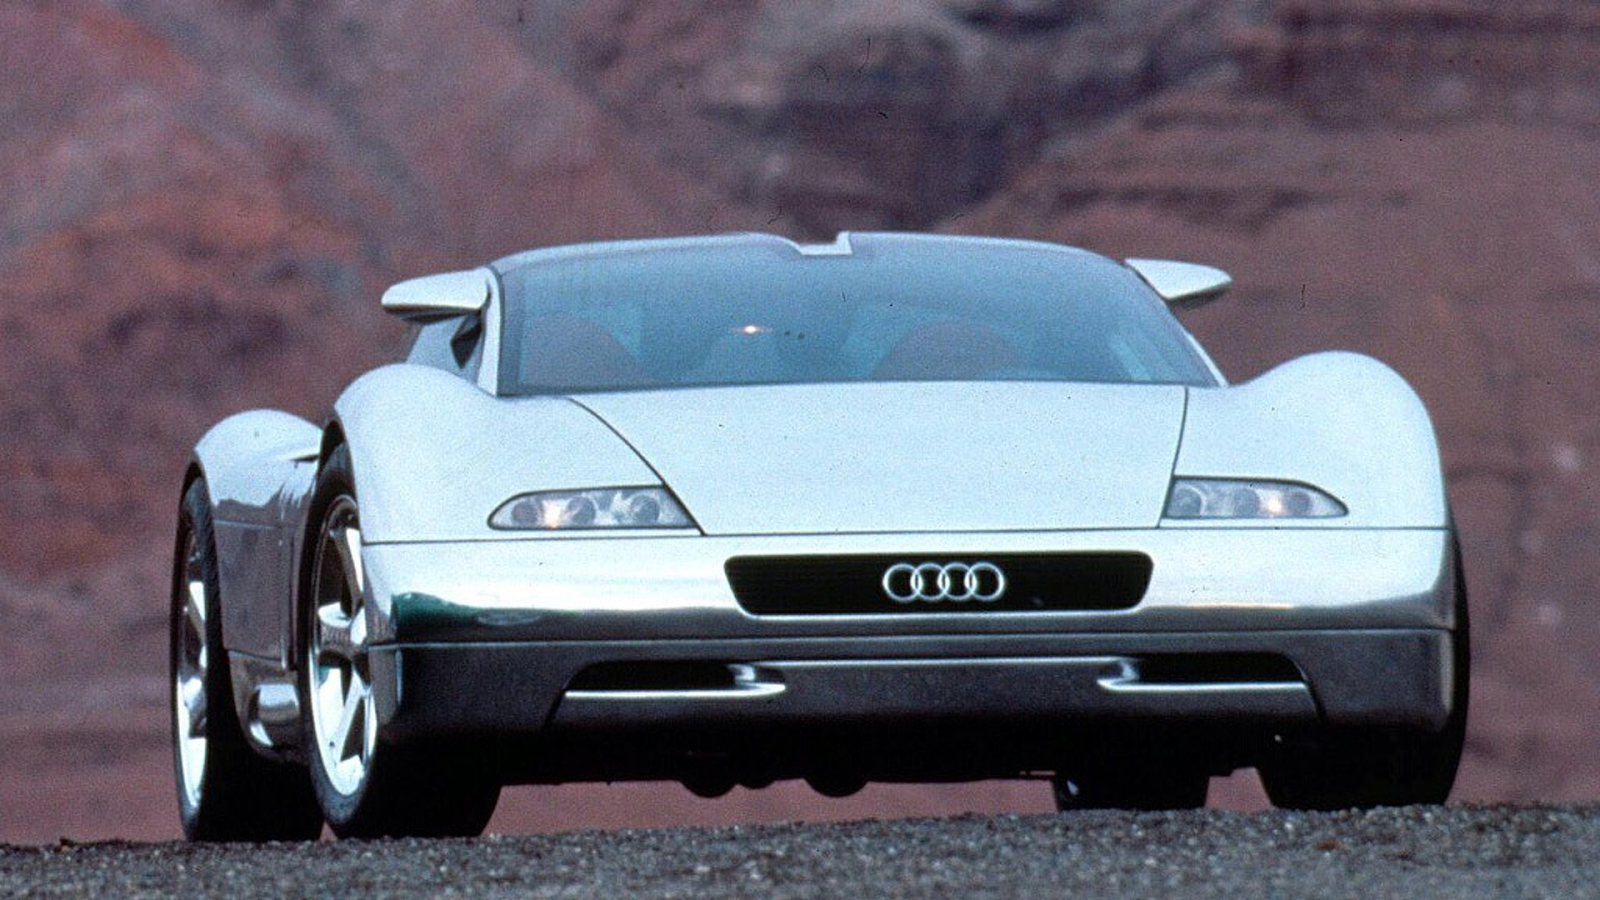 Audi Avus Quattro Concept Car front